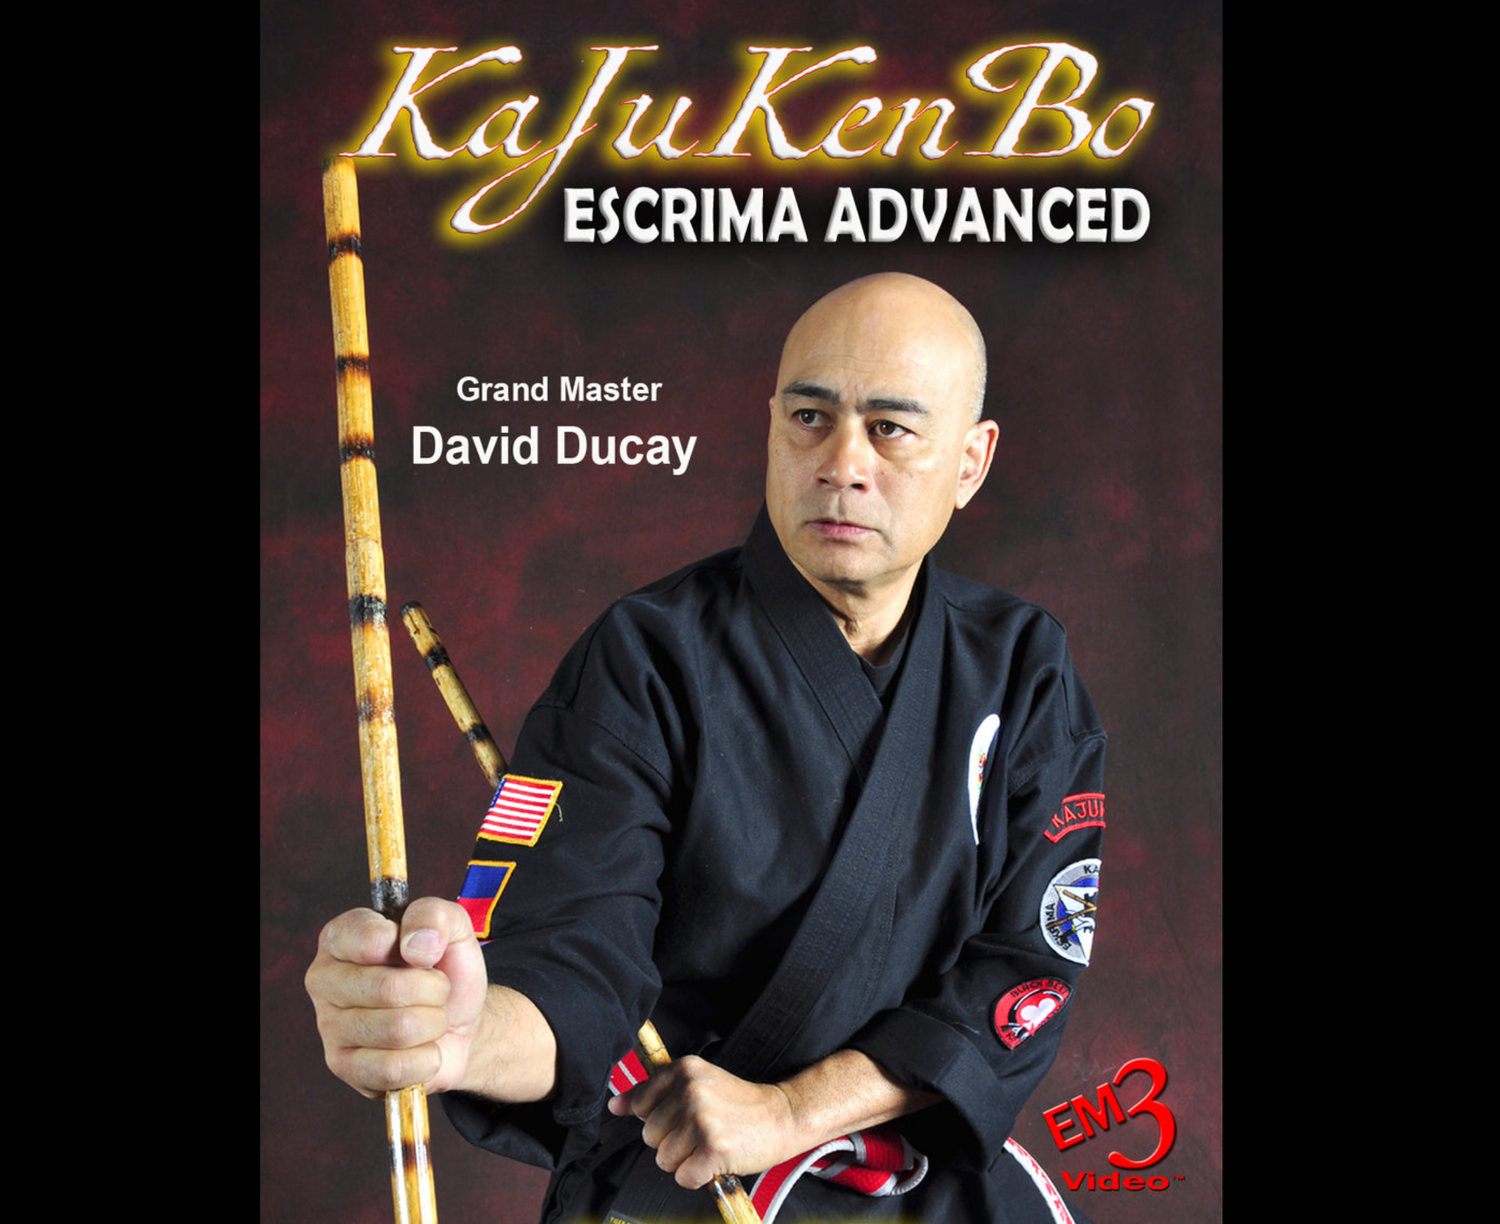 KaJuKenBo Escrima Advanced by David Ducay (On Demand)